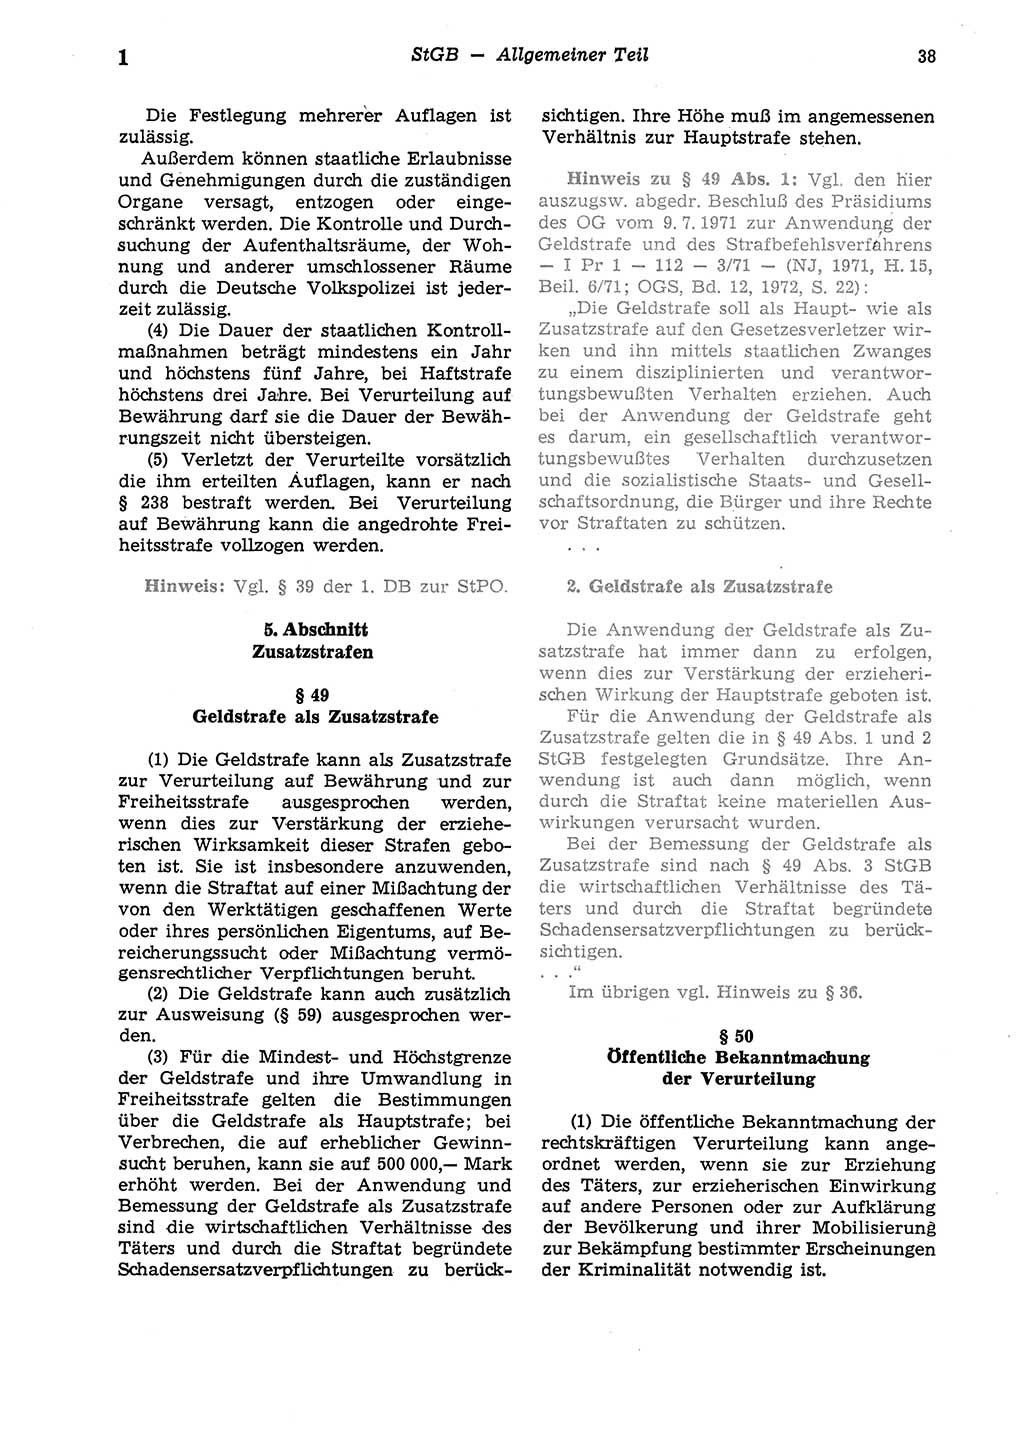 Strafgesetzbuch (StGB) der Deutschen Demokratischen Republik (DDR) und angrenzende Gesetze und Bestimmungen 1975, Seite 38 (StGB DDR Ges. Best. 1975, S. 38)